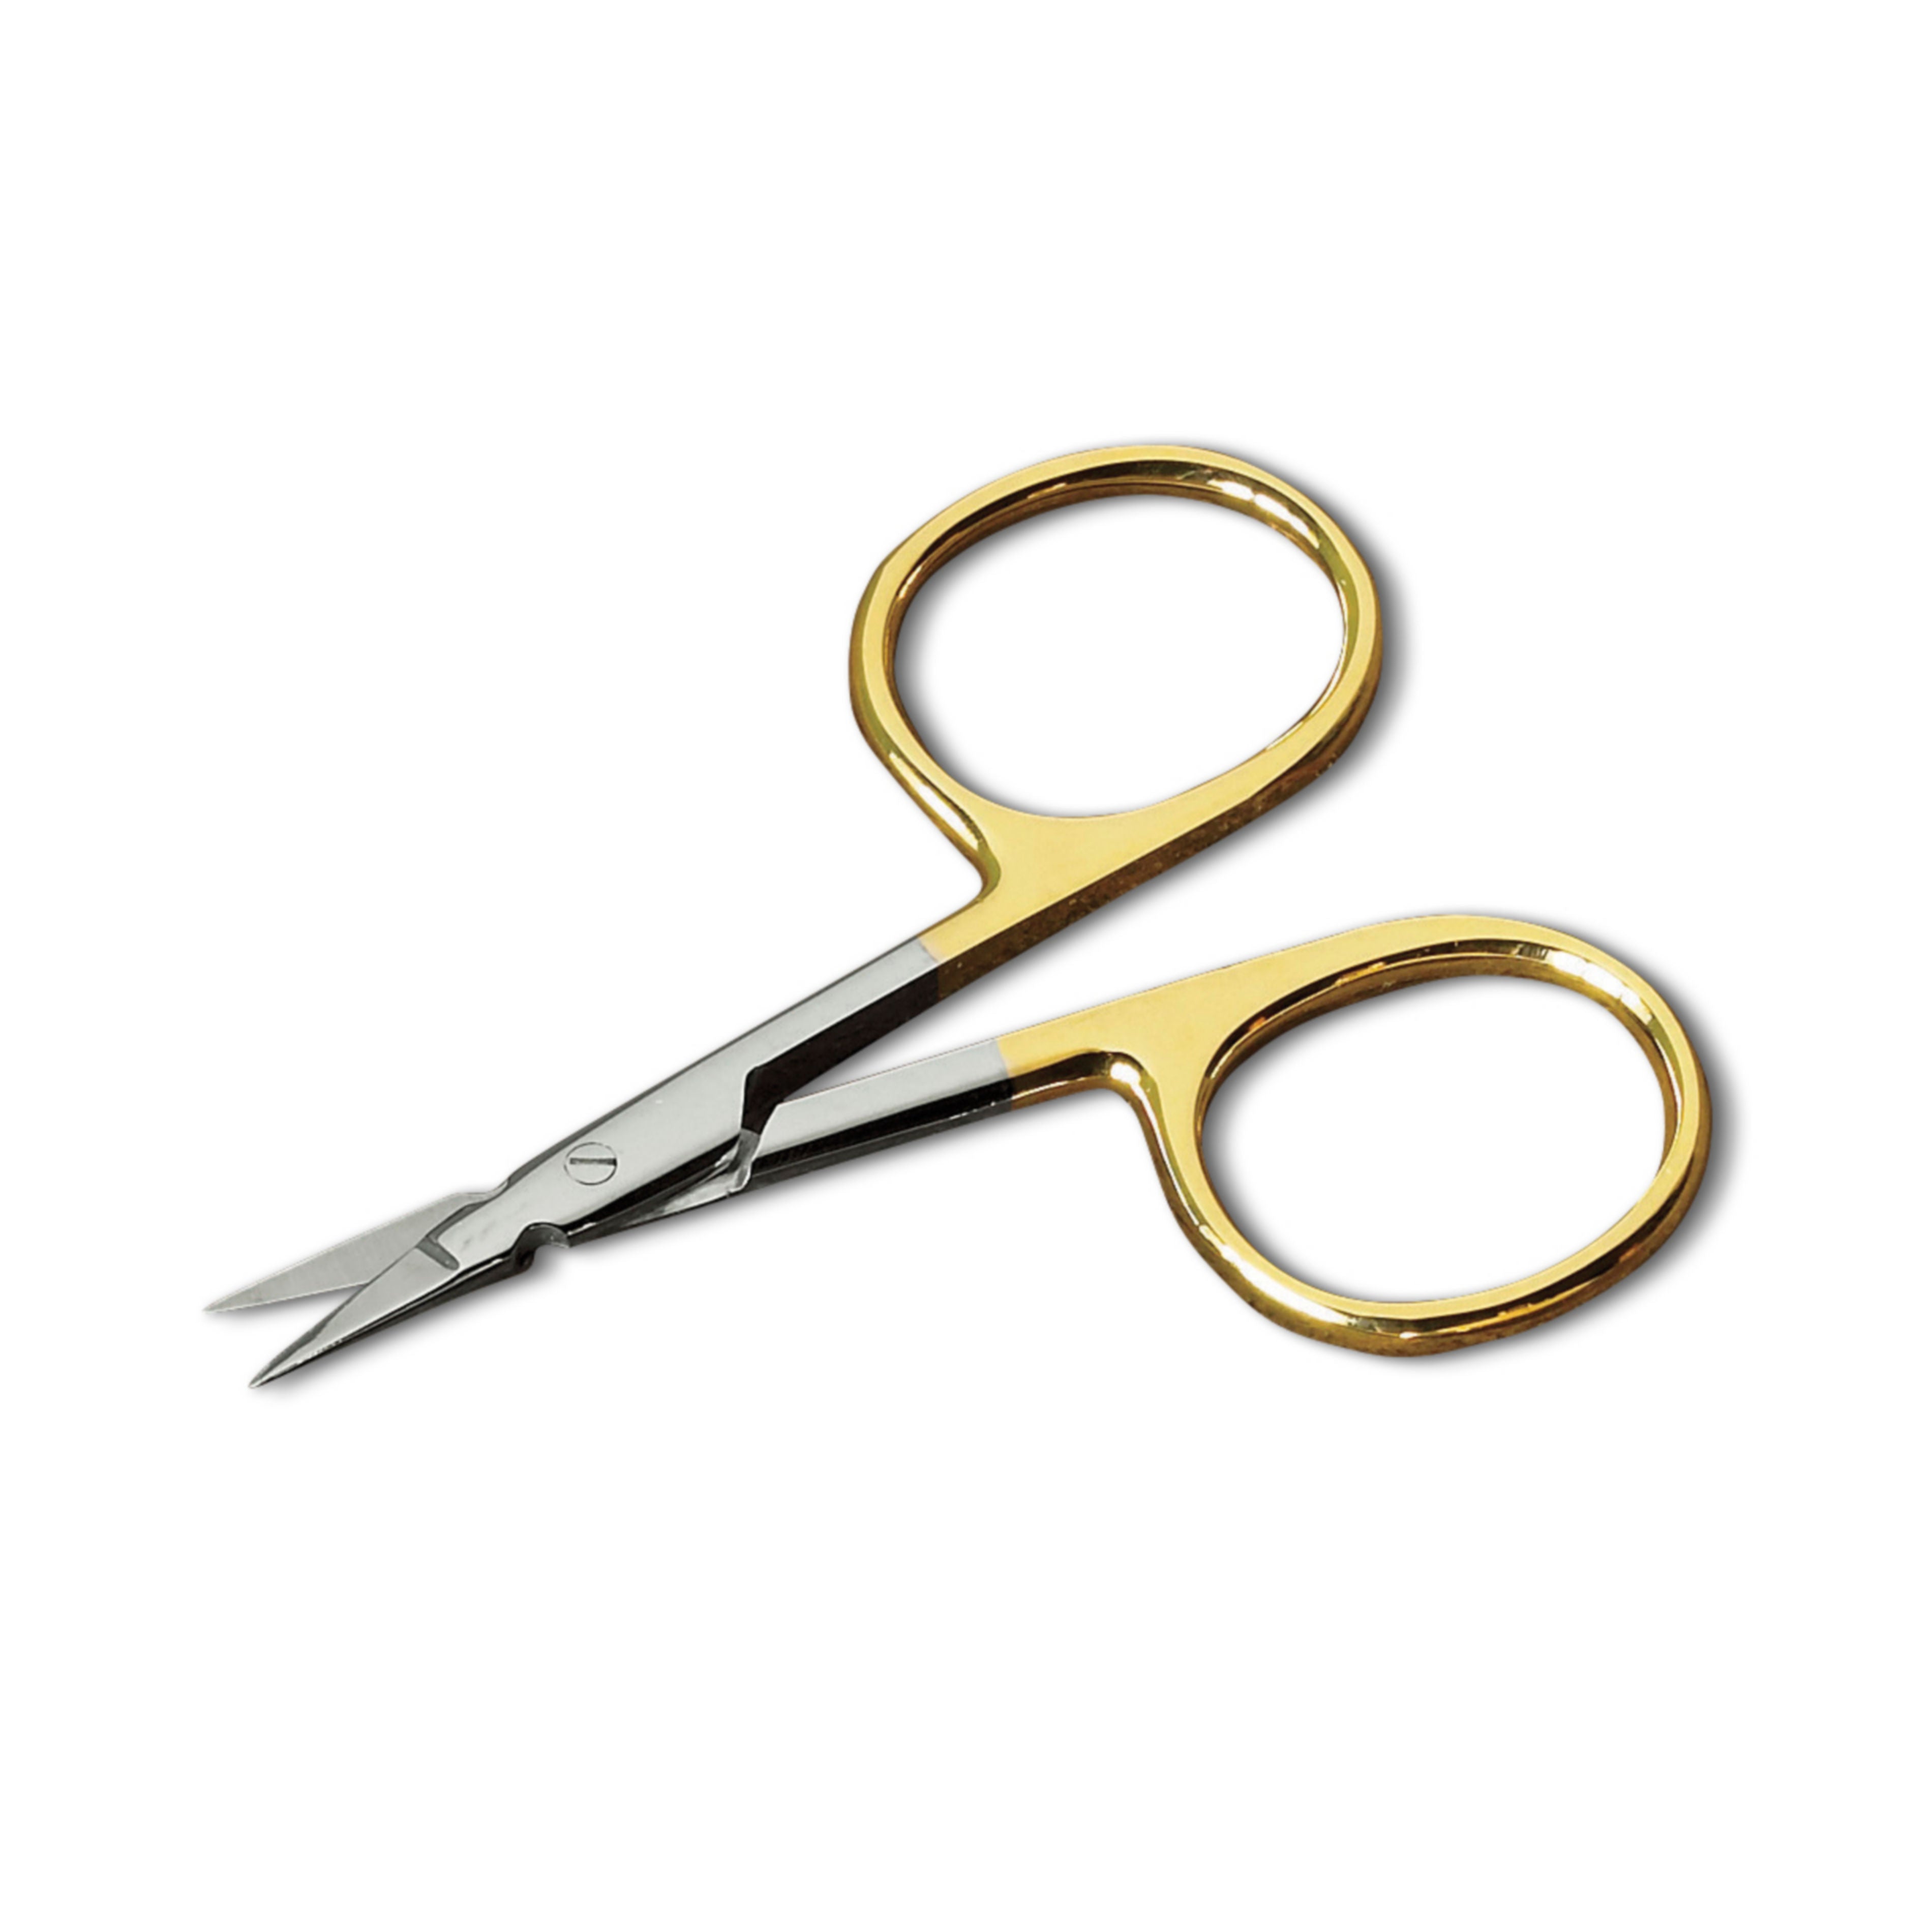 Premium Orvis Scissors